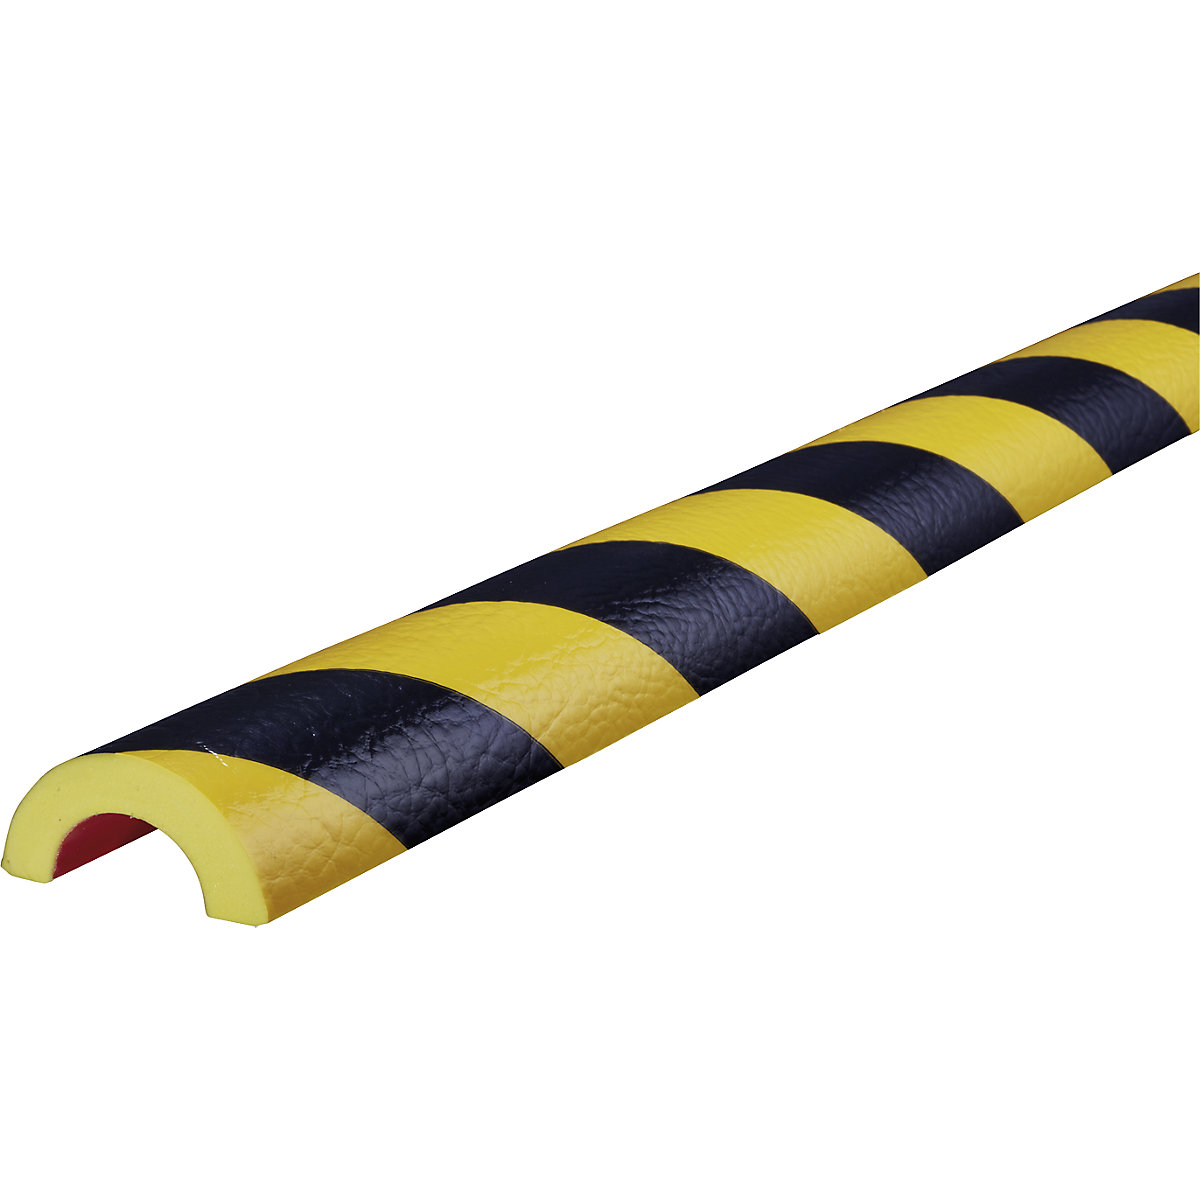 Knuffi®-buisbescherming – SHG, type R30, stuk van 1 m, zwart/geel-11